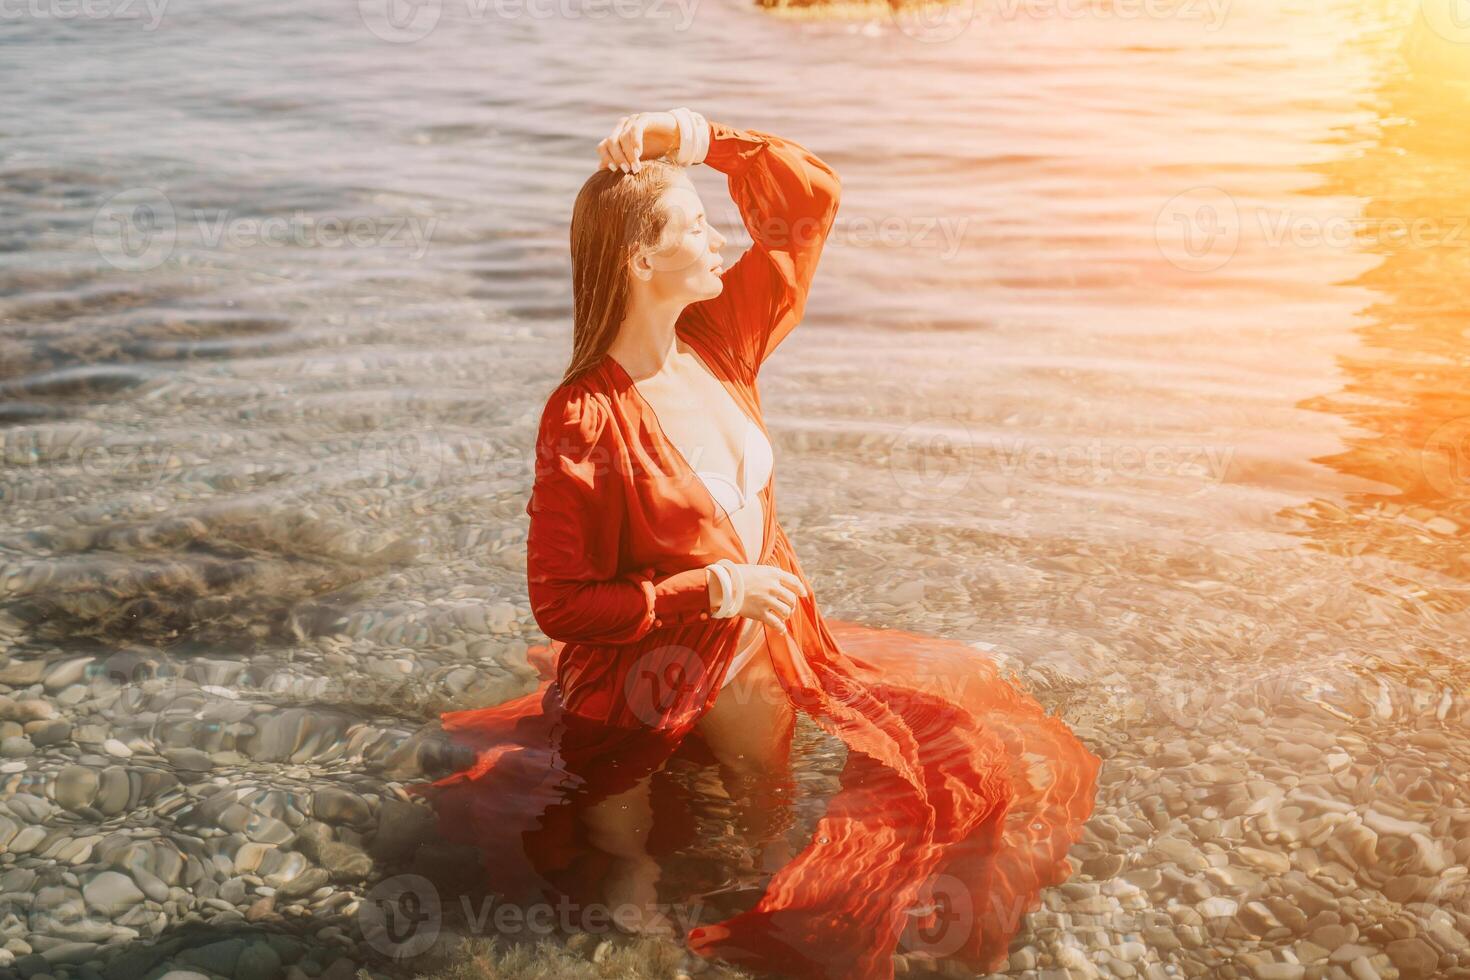 mujer viaje mar. contento turista en rojo vestir disfrutar tomando imagen al aire libre para recuerdos. mujer viajero posando en mar playa, rodeado por volcánico montañas, compartiendo viaje aventuras viaje foto